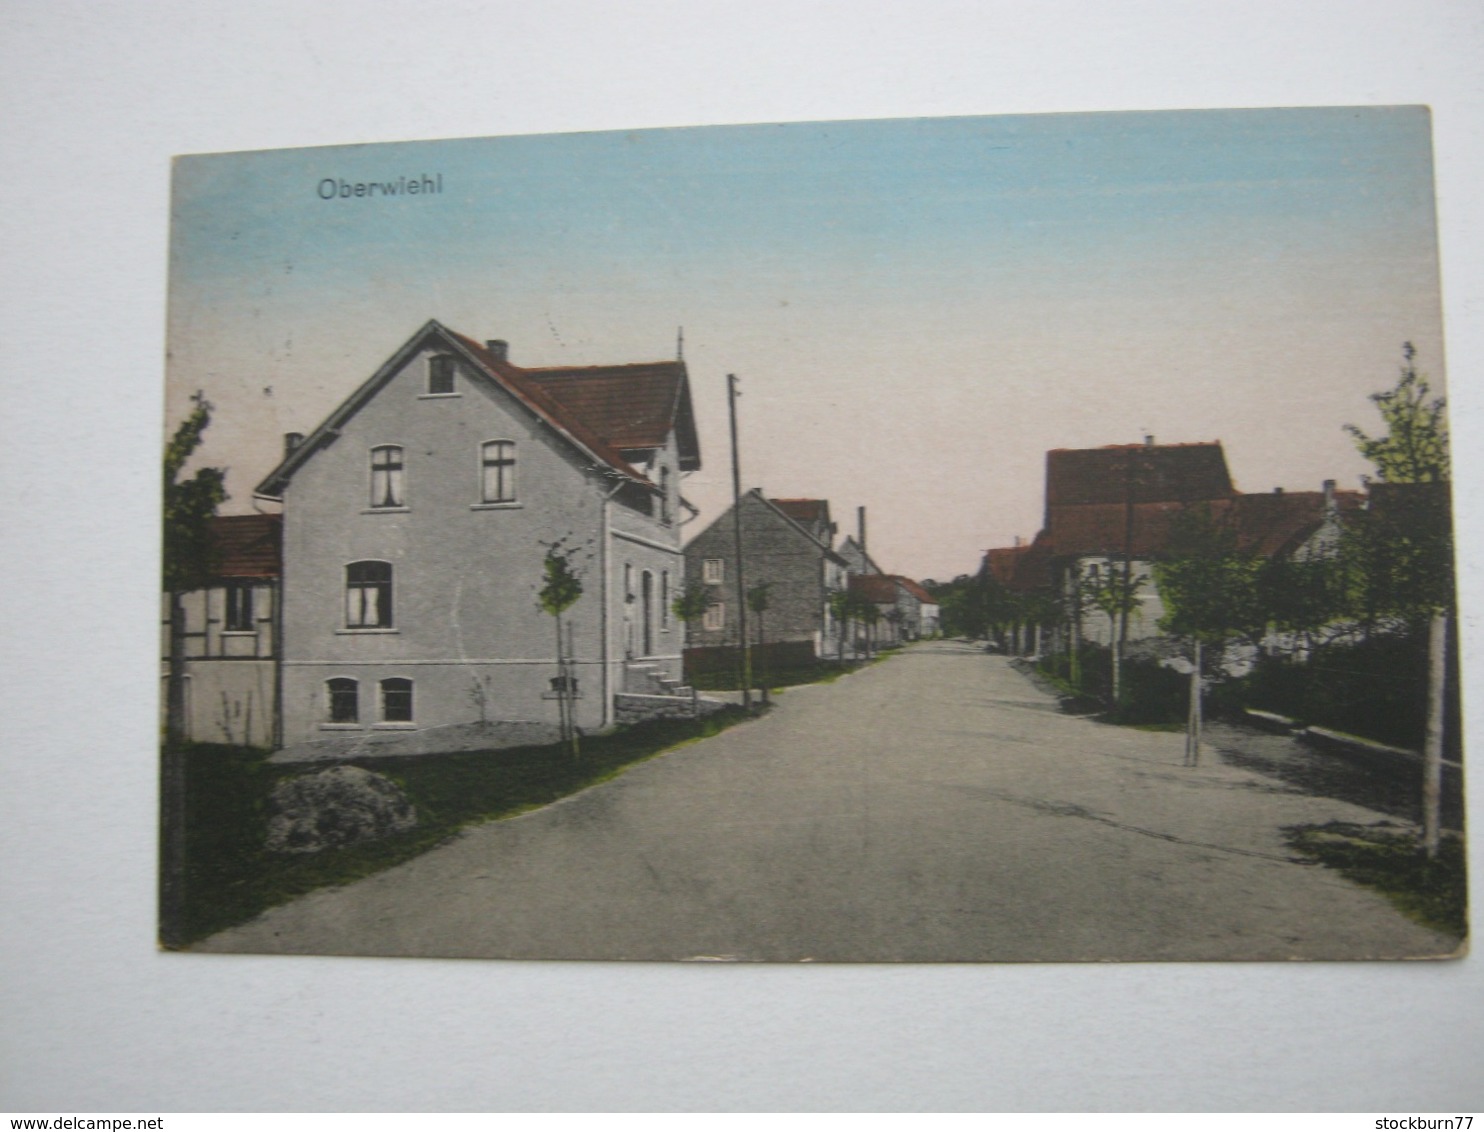 OBERWIEHL, WIEHL, Strasse, Seltene Karte Um 1919 Mit Stempel + Marke - Wiehl